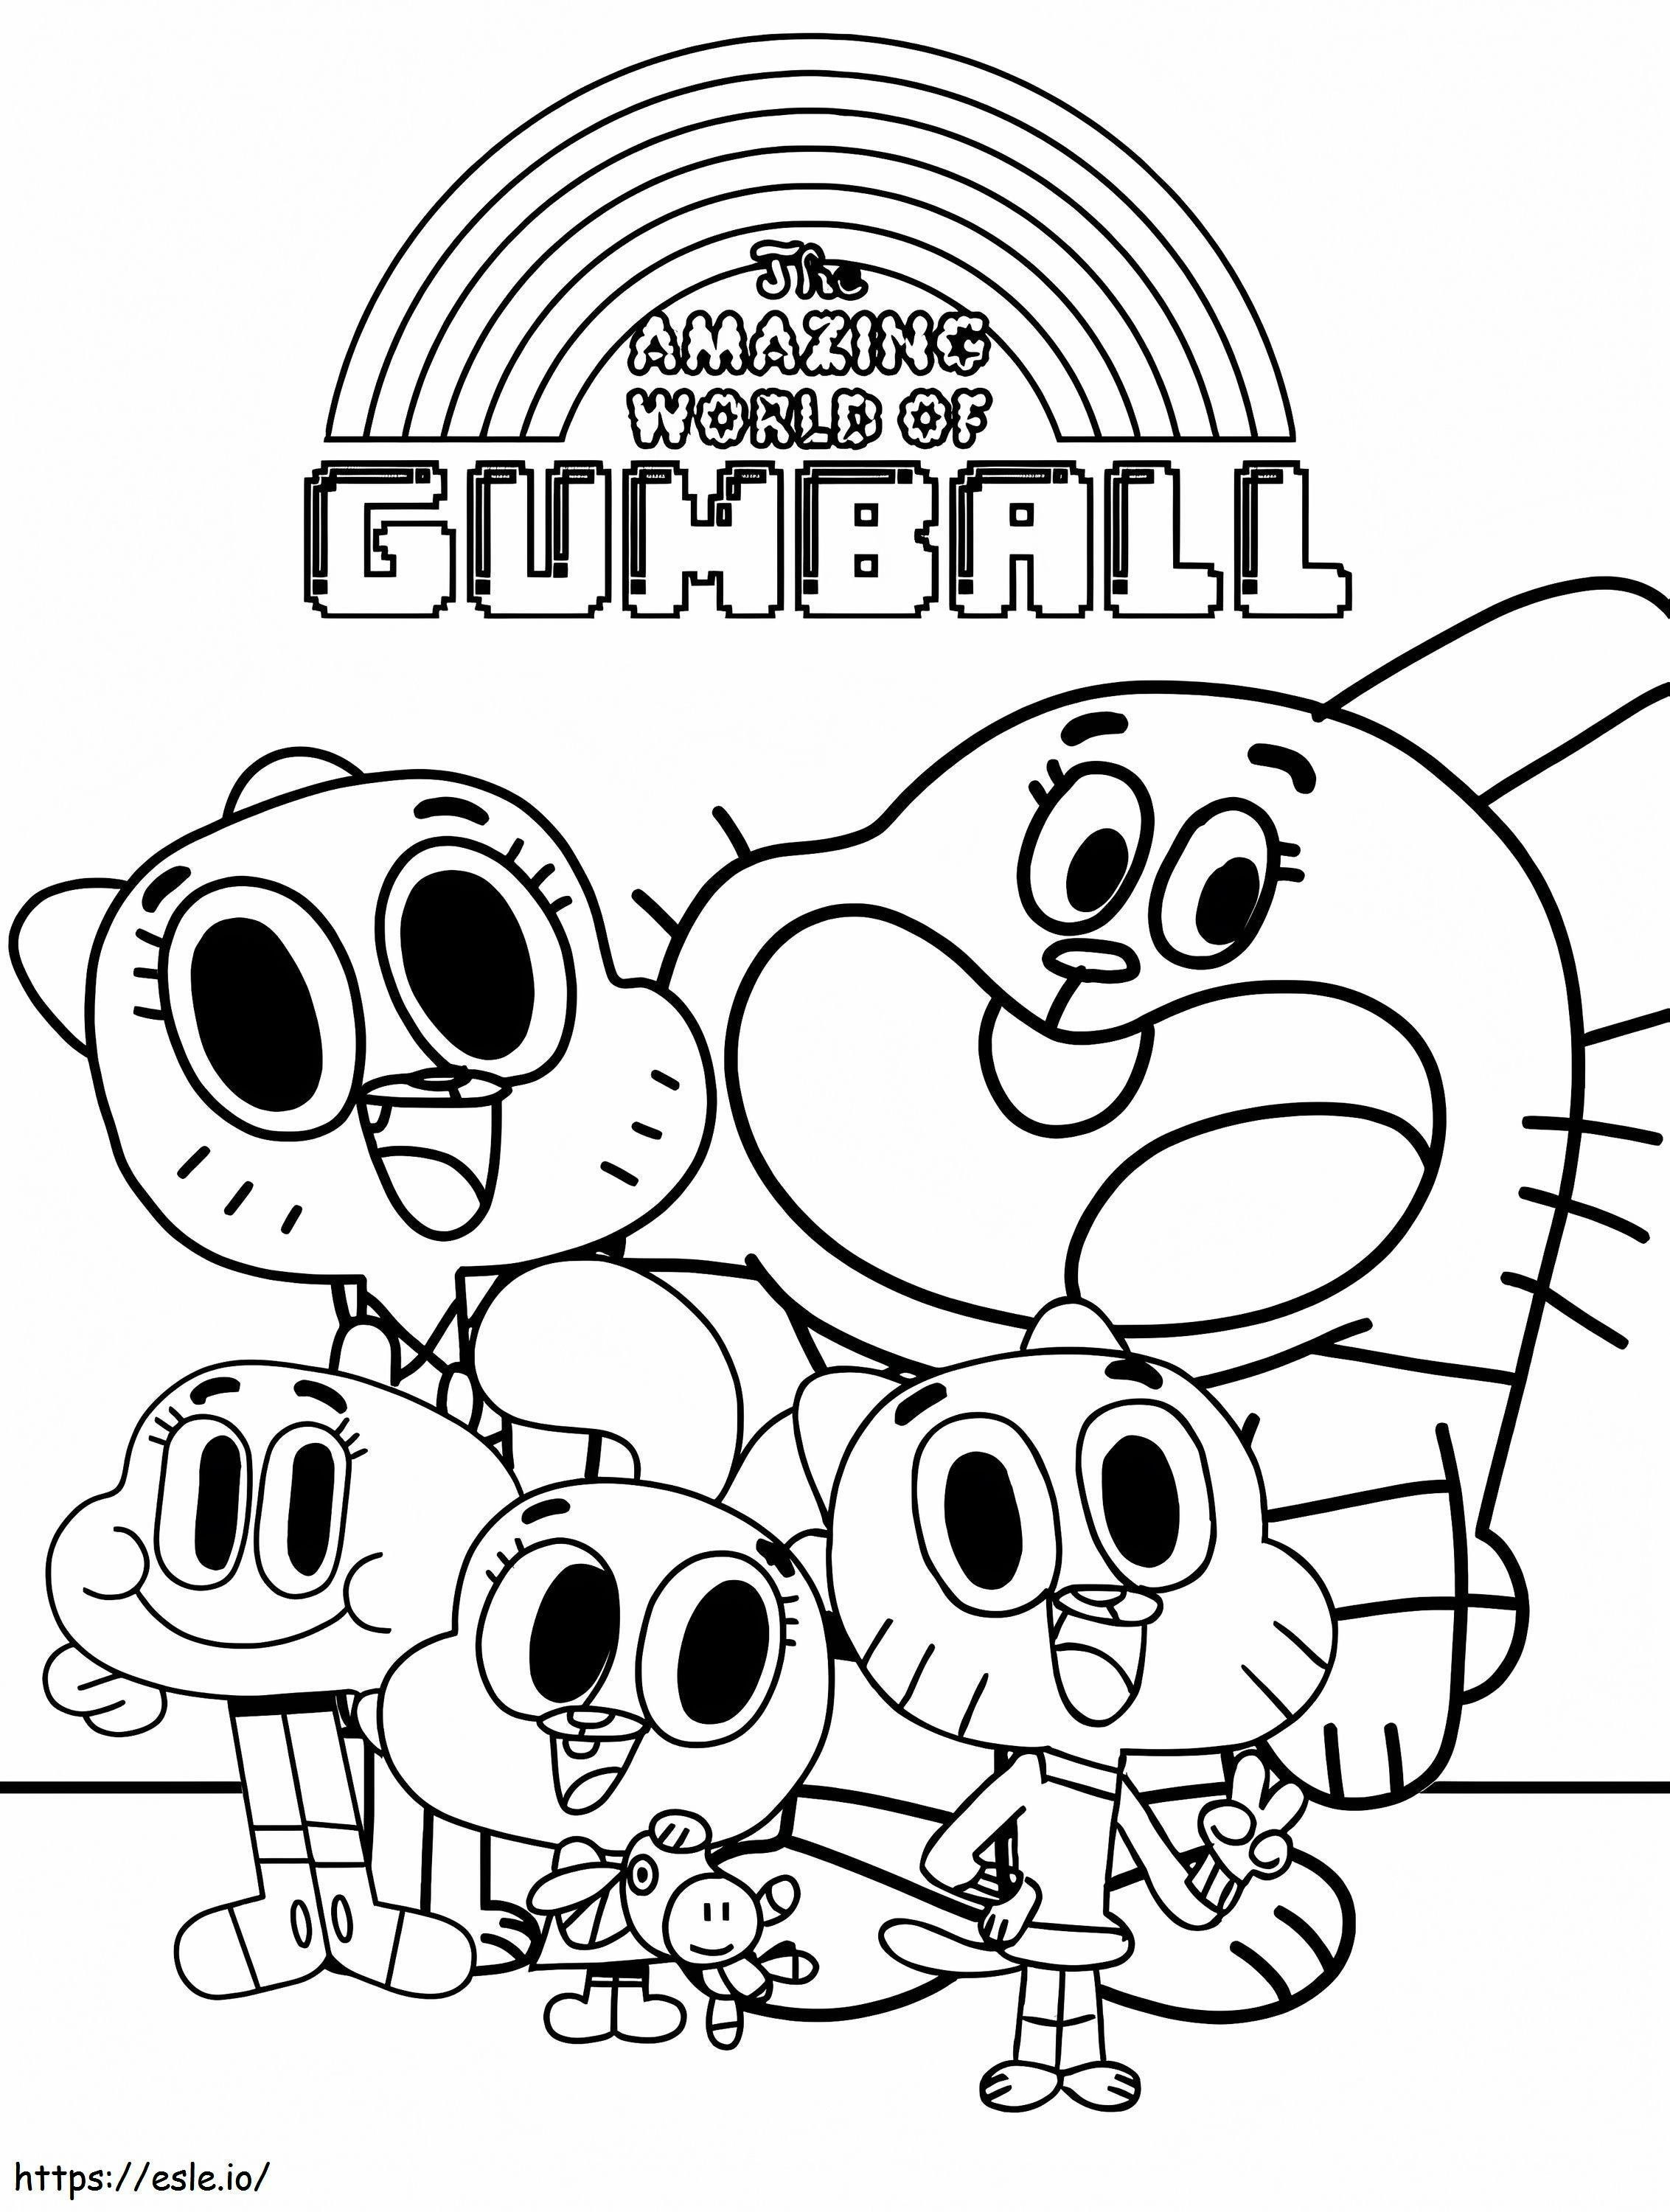 Desenho do incrível mundo de Gumball para colorir